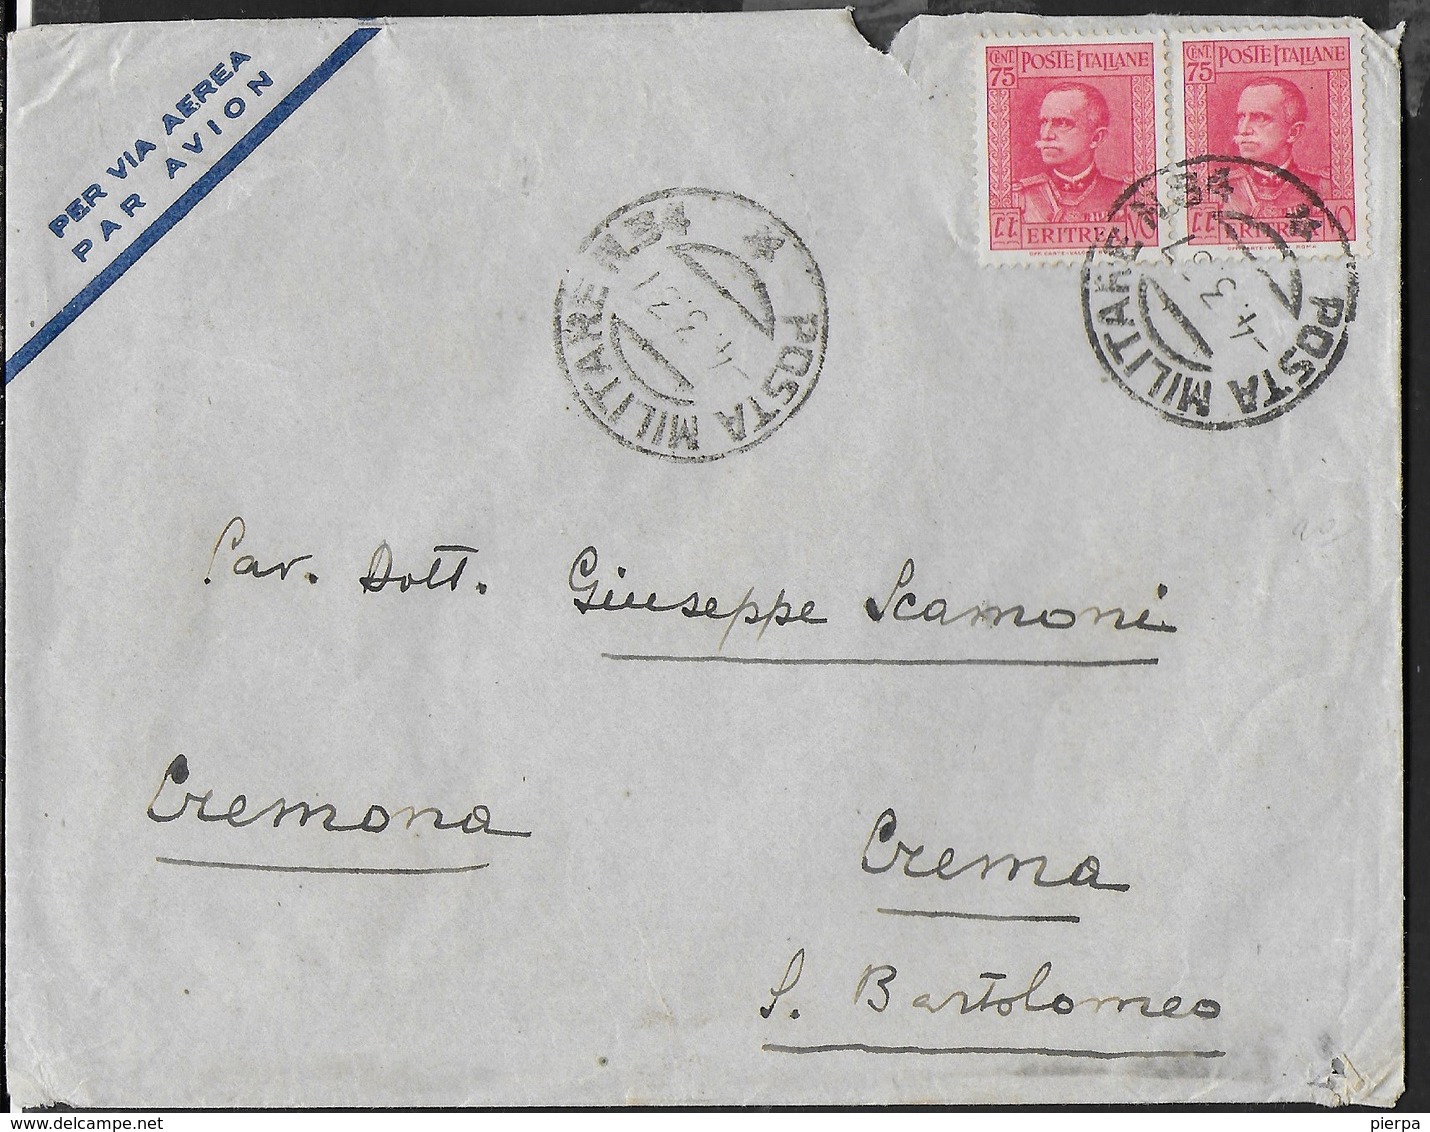 ETIOPIA - POSTA MILITARE N.84 (1- P4) SU BUSTA VIA AEREA 04.03.1937 PER CREMA - Ethiopia